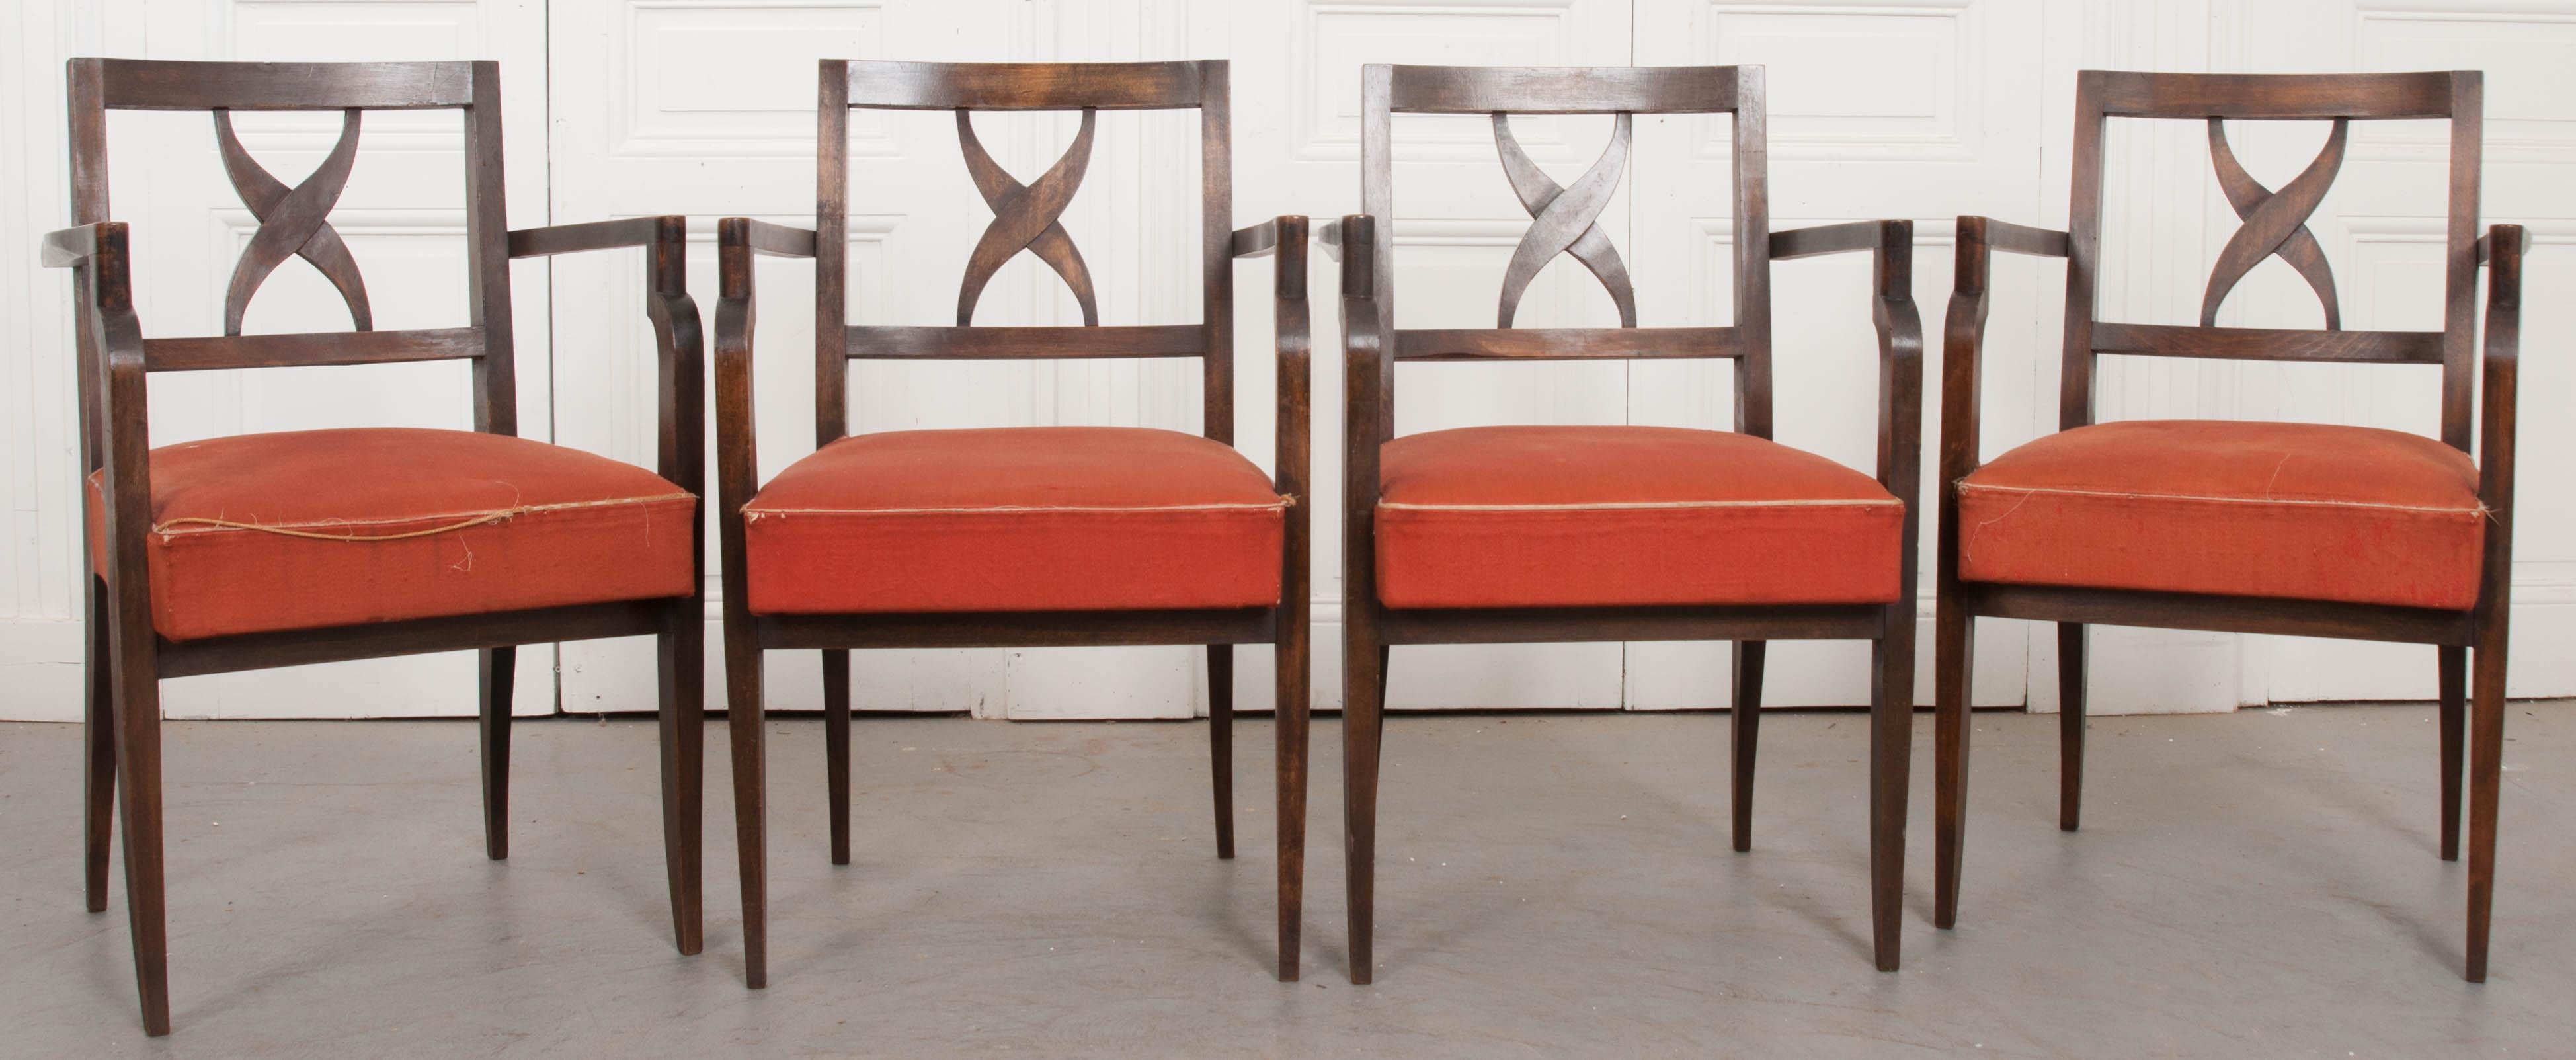 Ein eleganter Satz von vier französischen Sesseln aus Nussbaumholz aus der Mitte des Jahrhunderts mit gepolsterten Sitzen. Die Stühle haben ein Design, das sowohl gerade Linien und rechte Winkel mit Kurven und formvollendeten Formen verbindet. Die